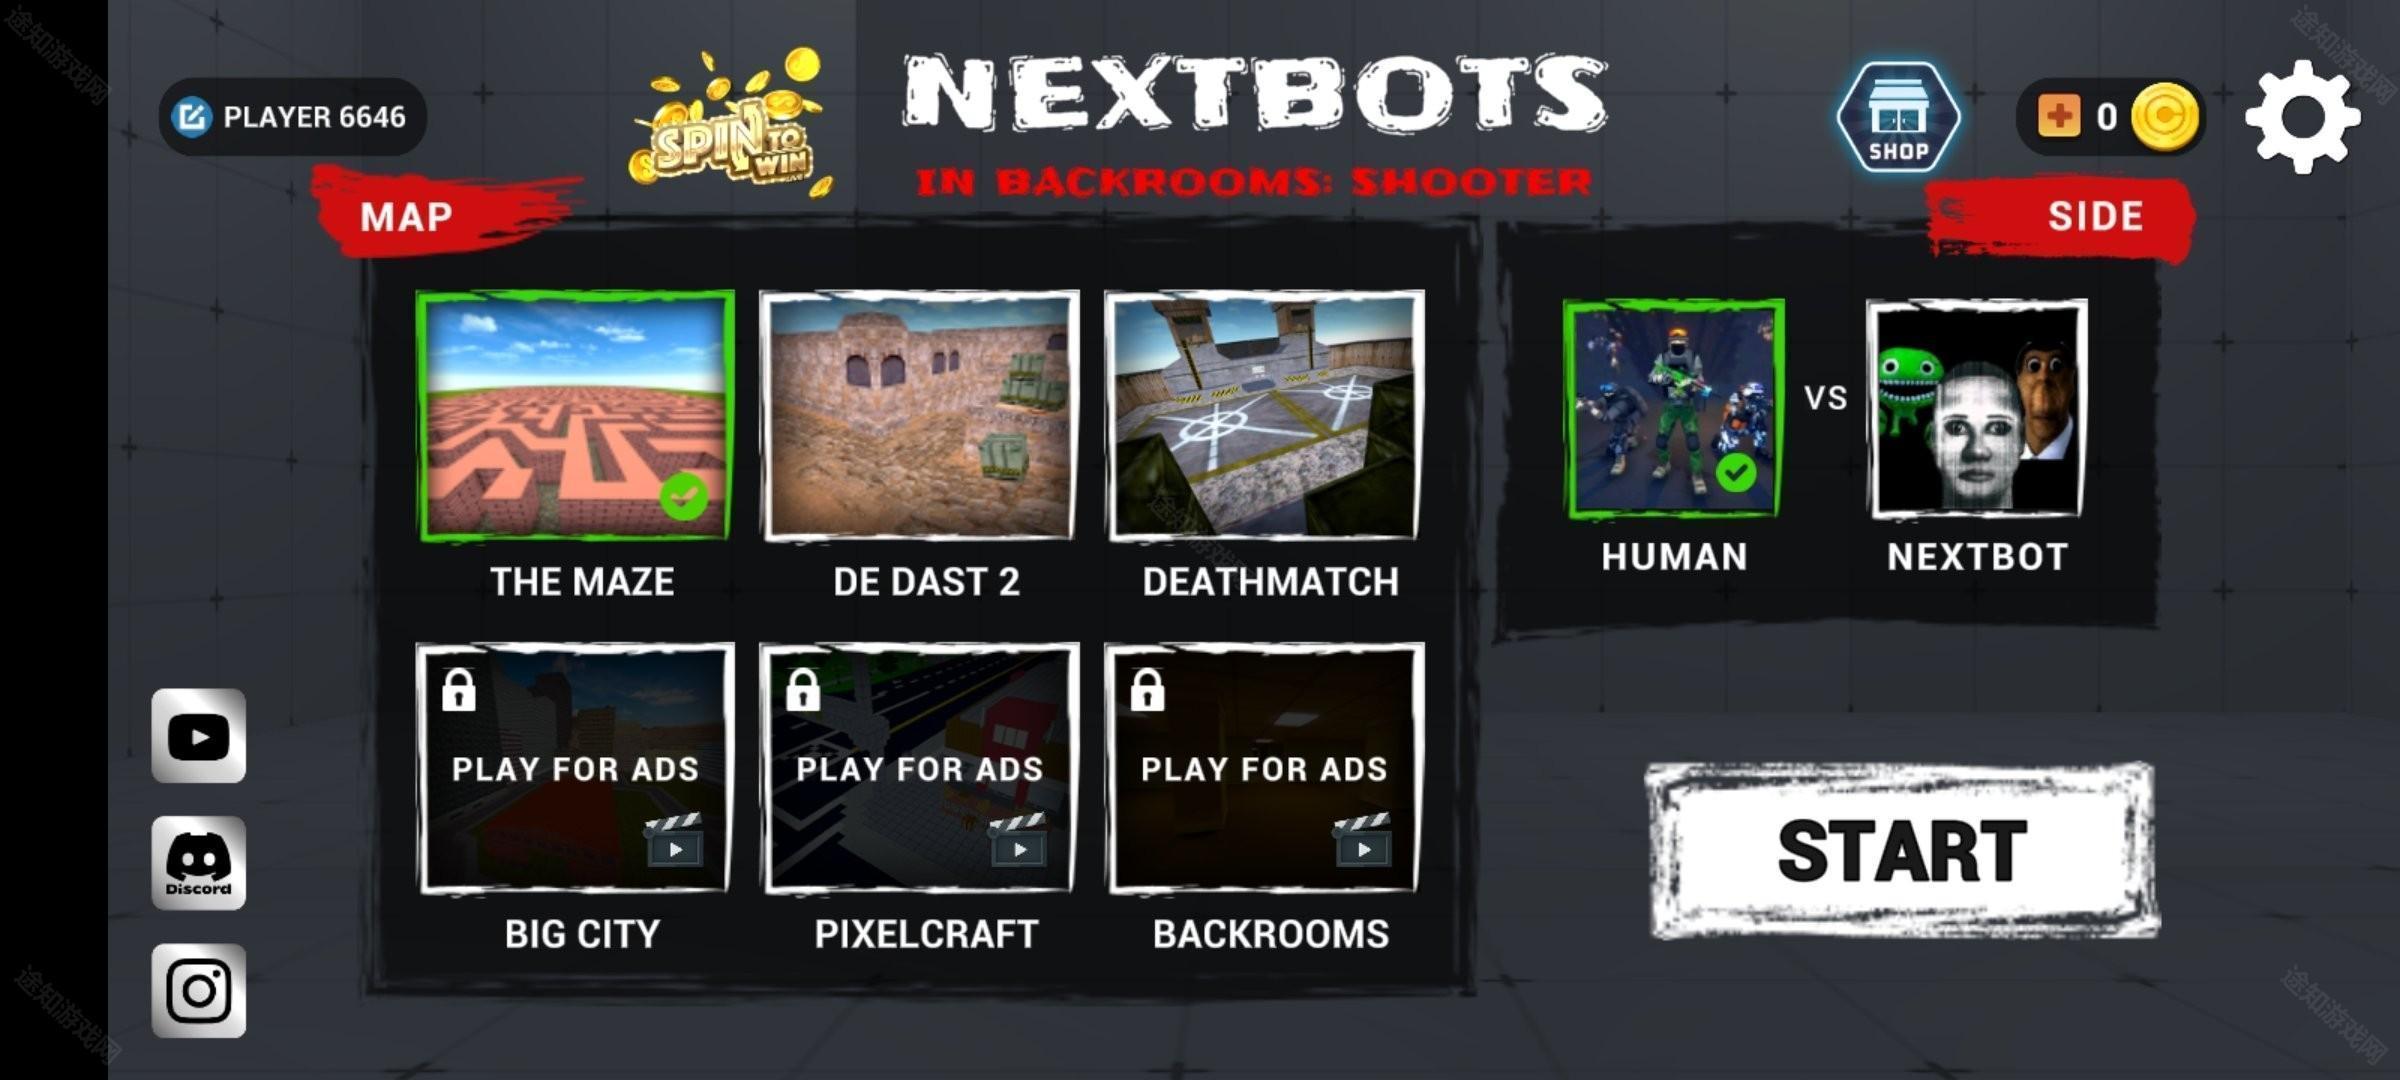 Nextbots沙盒射击游戏